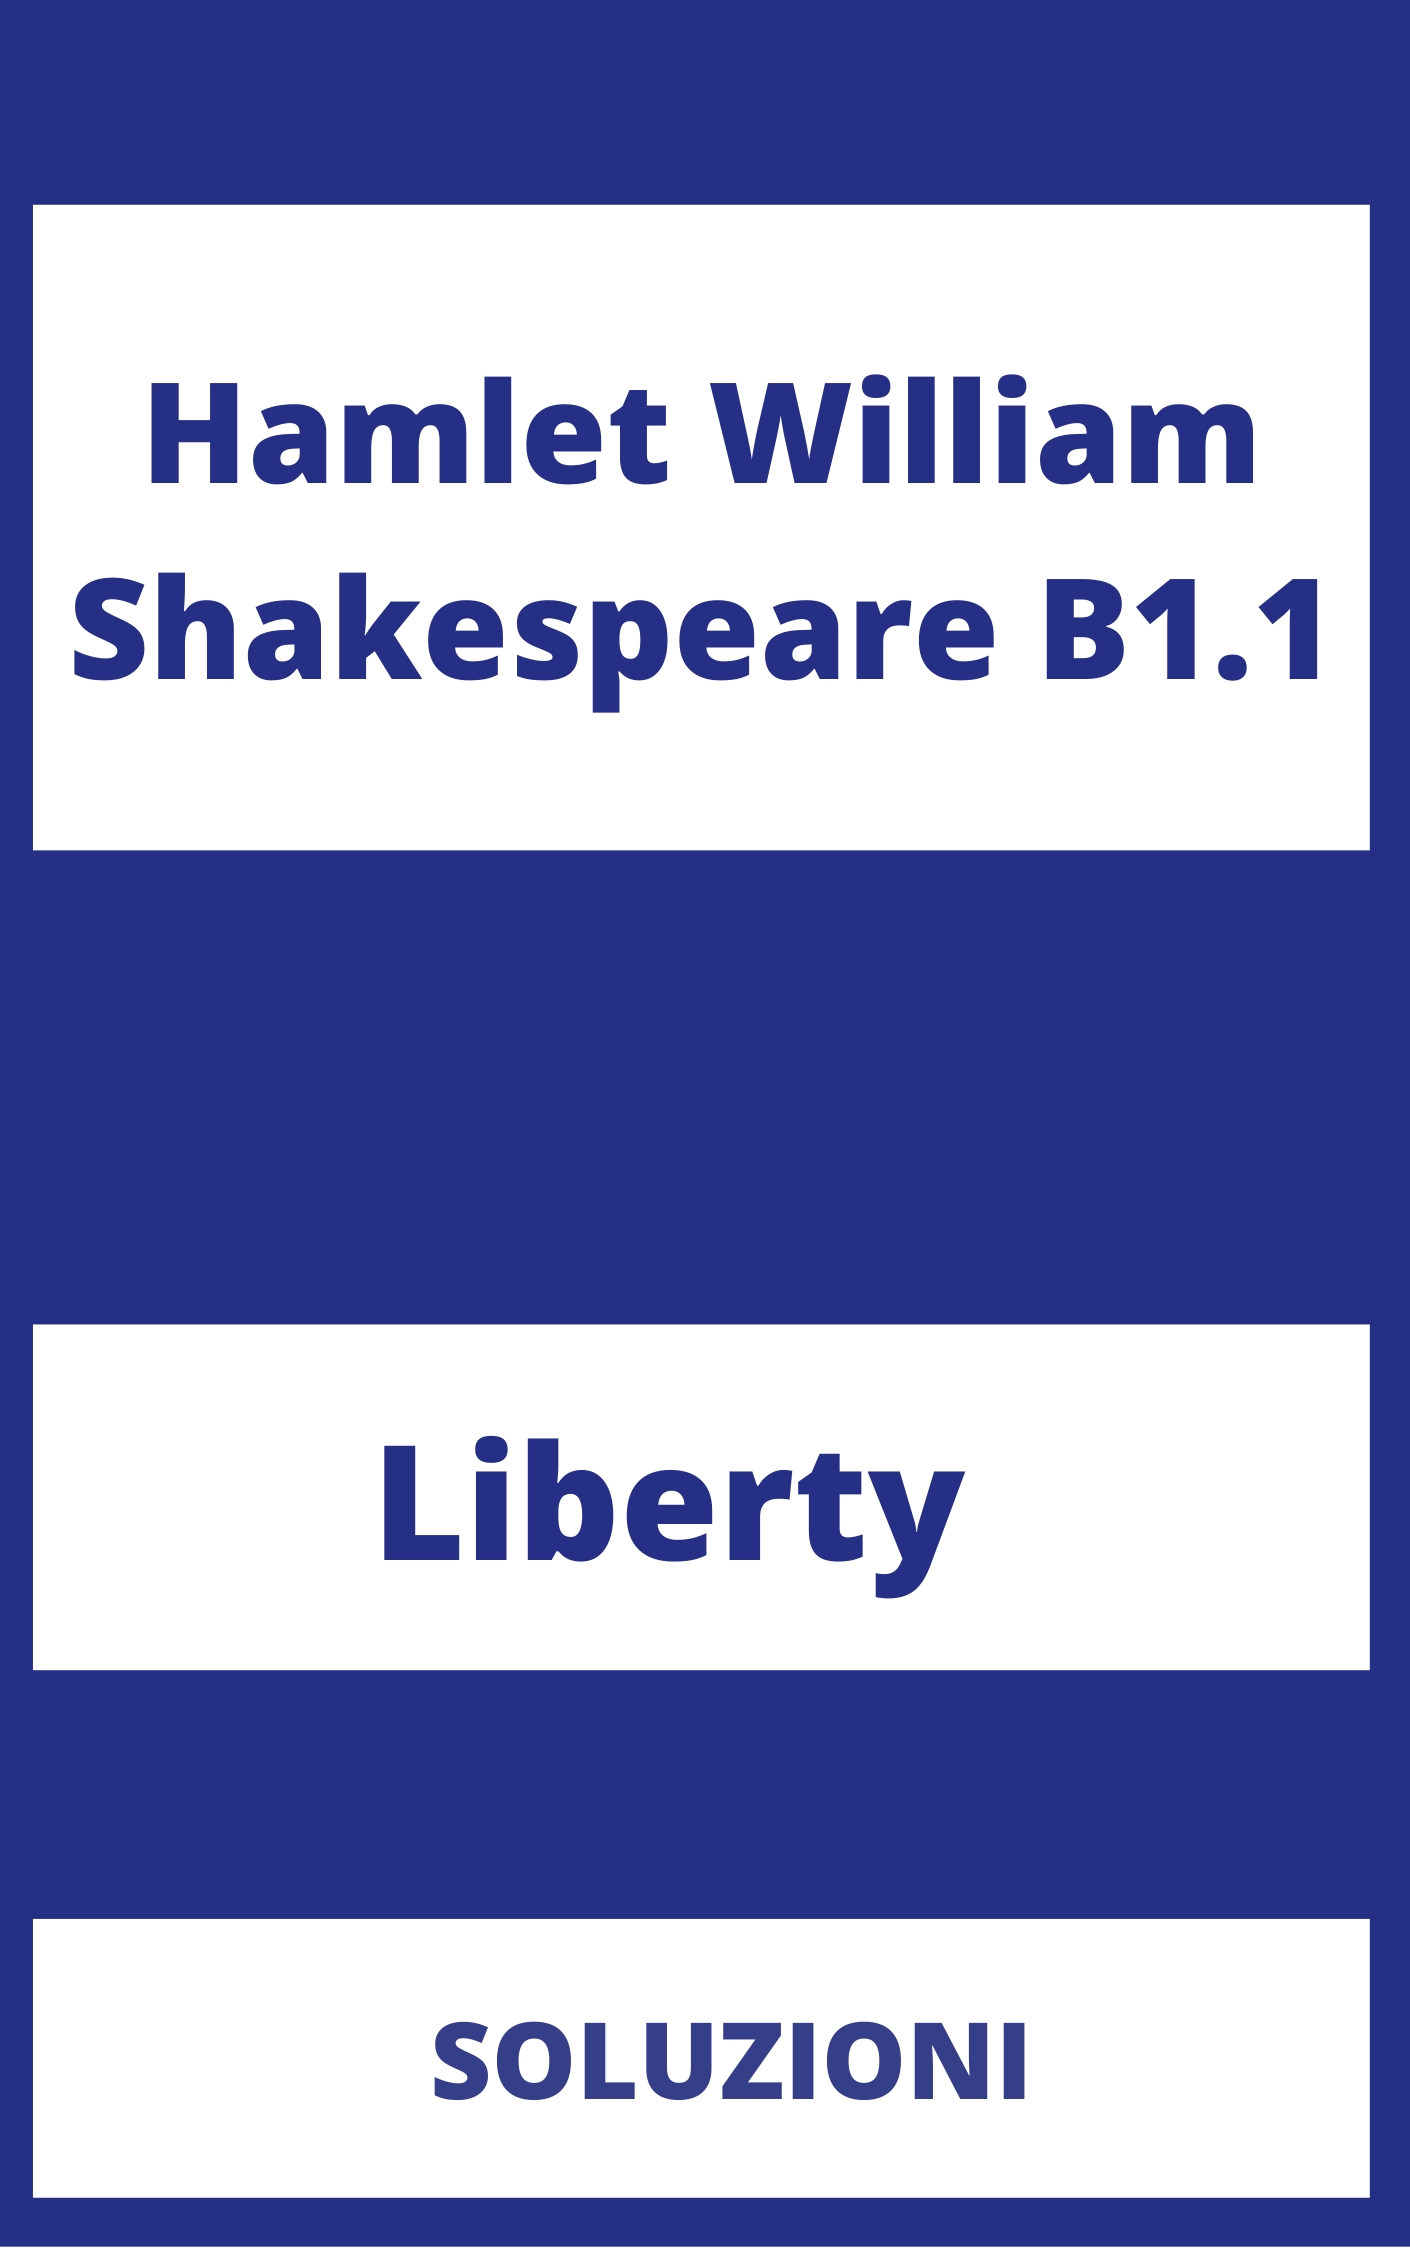 Hamlet William Shakespeare B1.1 Soluzioni